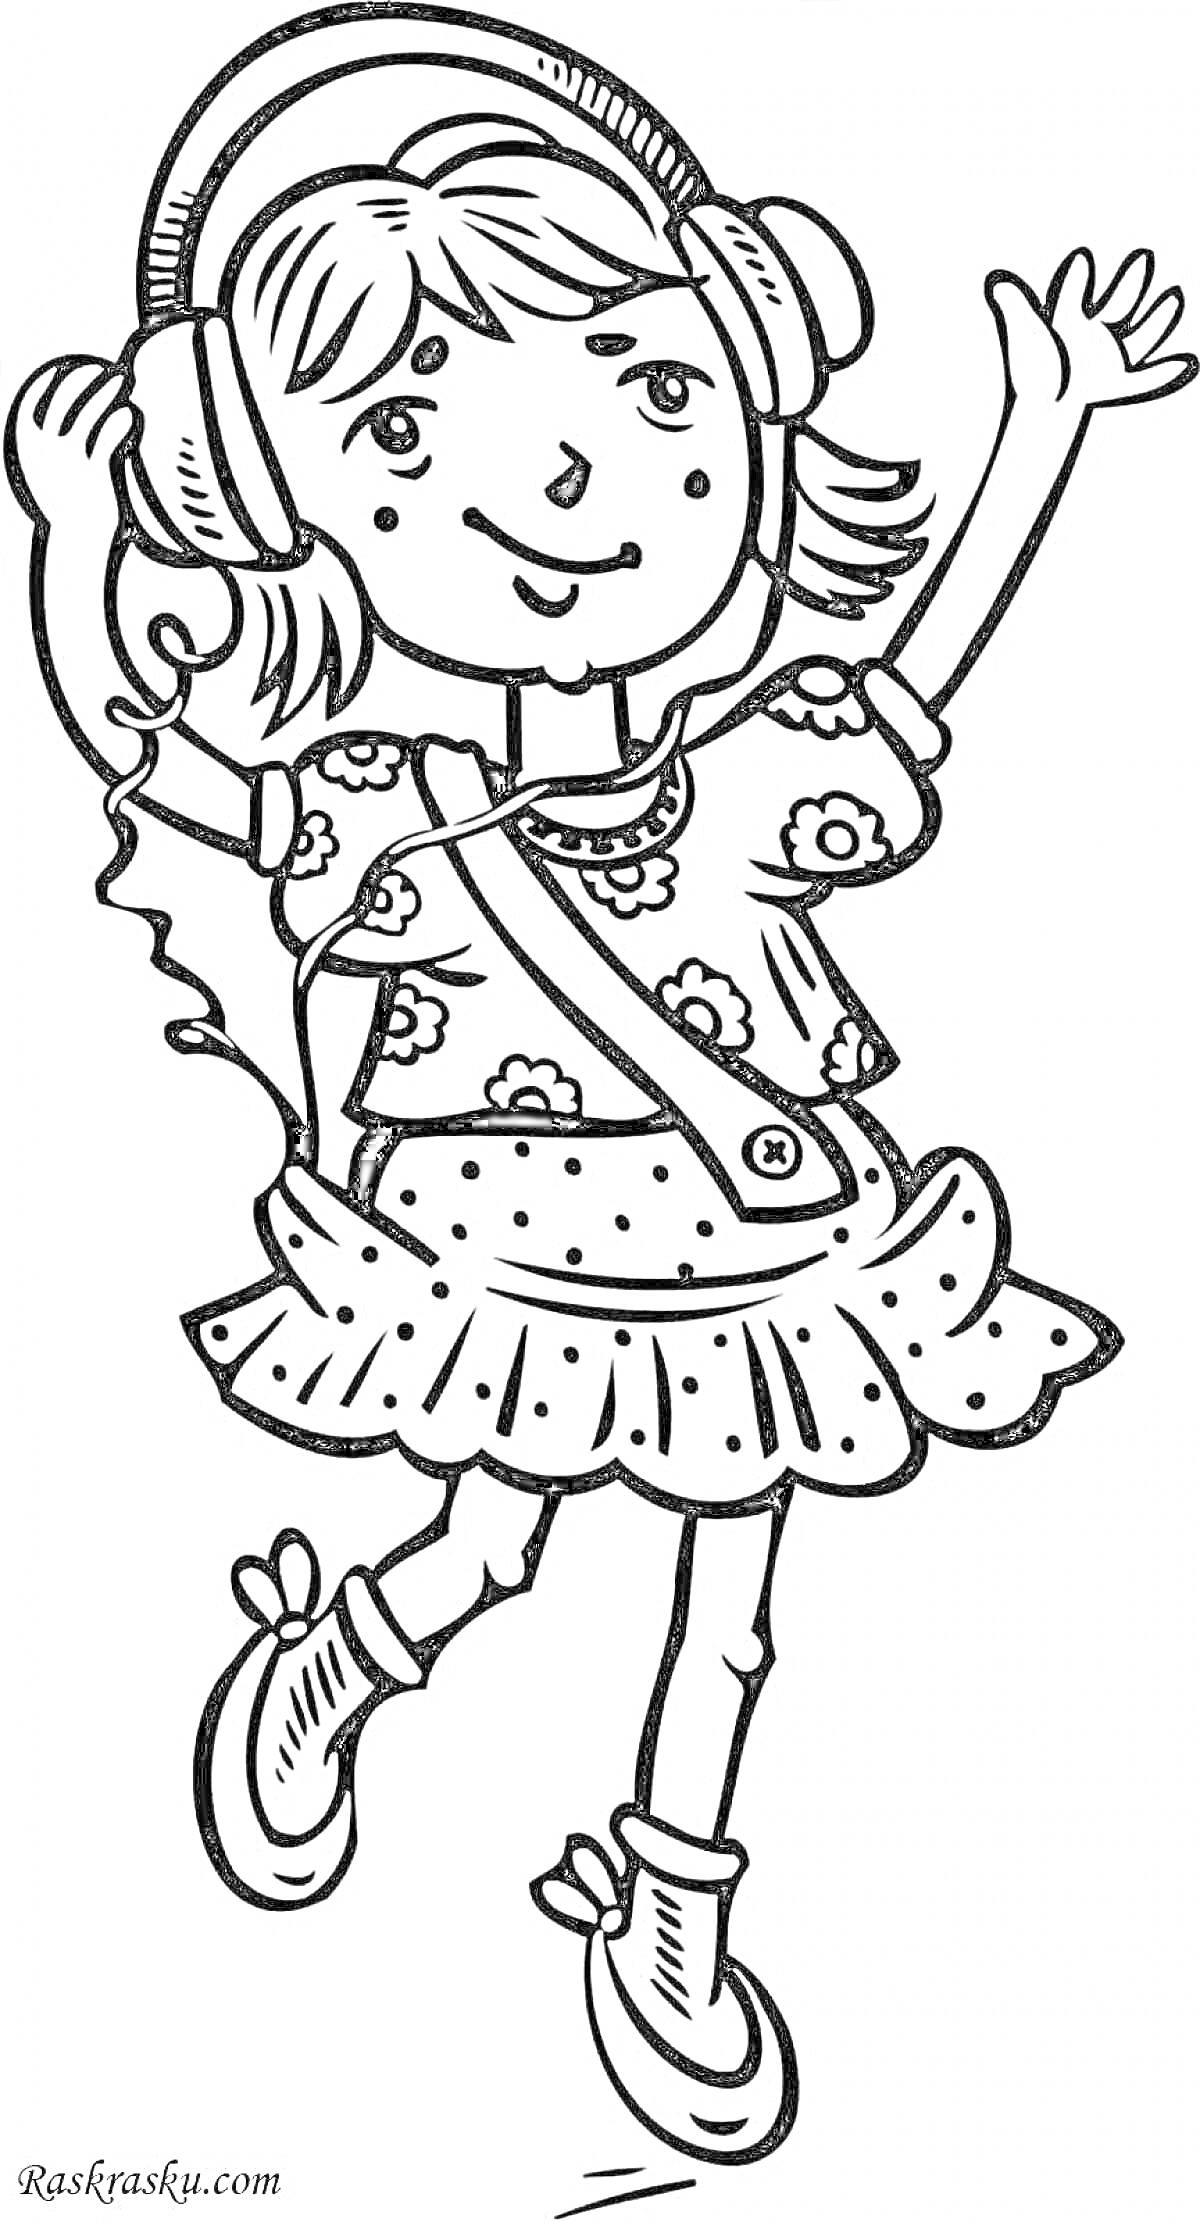 Раскраска Девочка в наушниках в цветастом платьице с сумкой через плечо